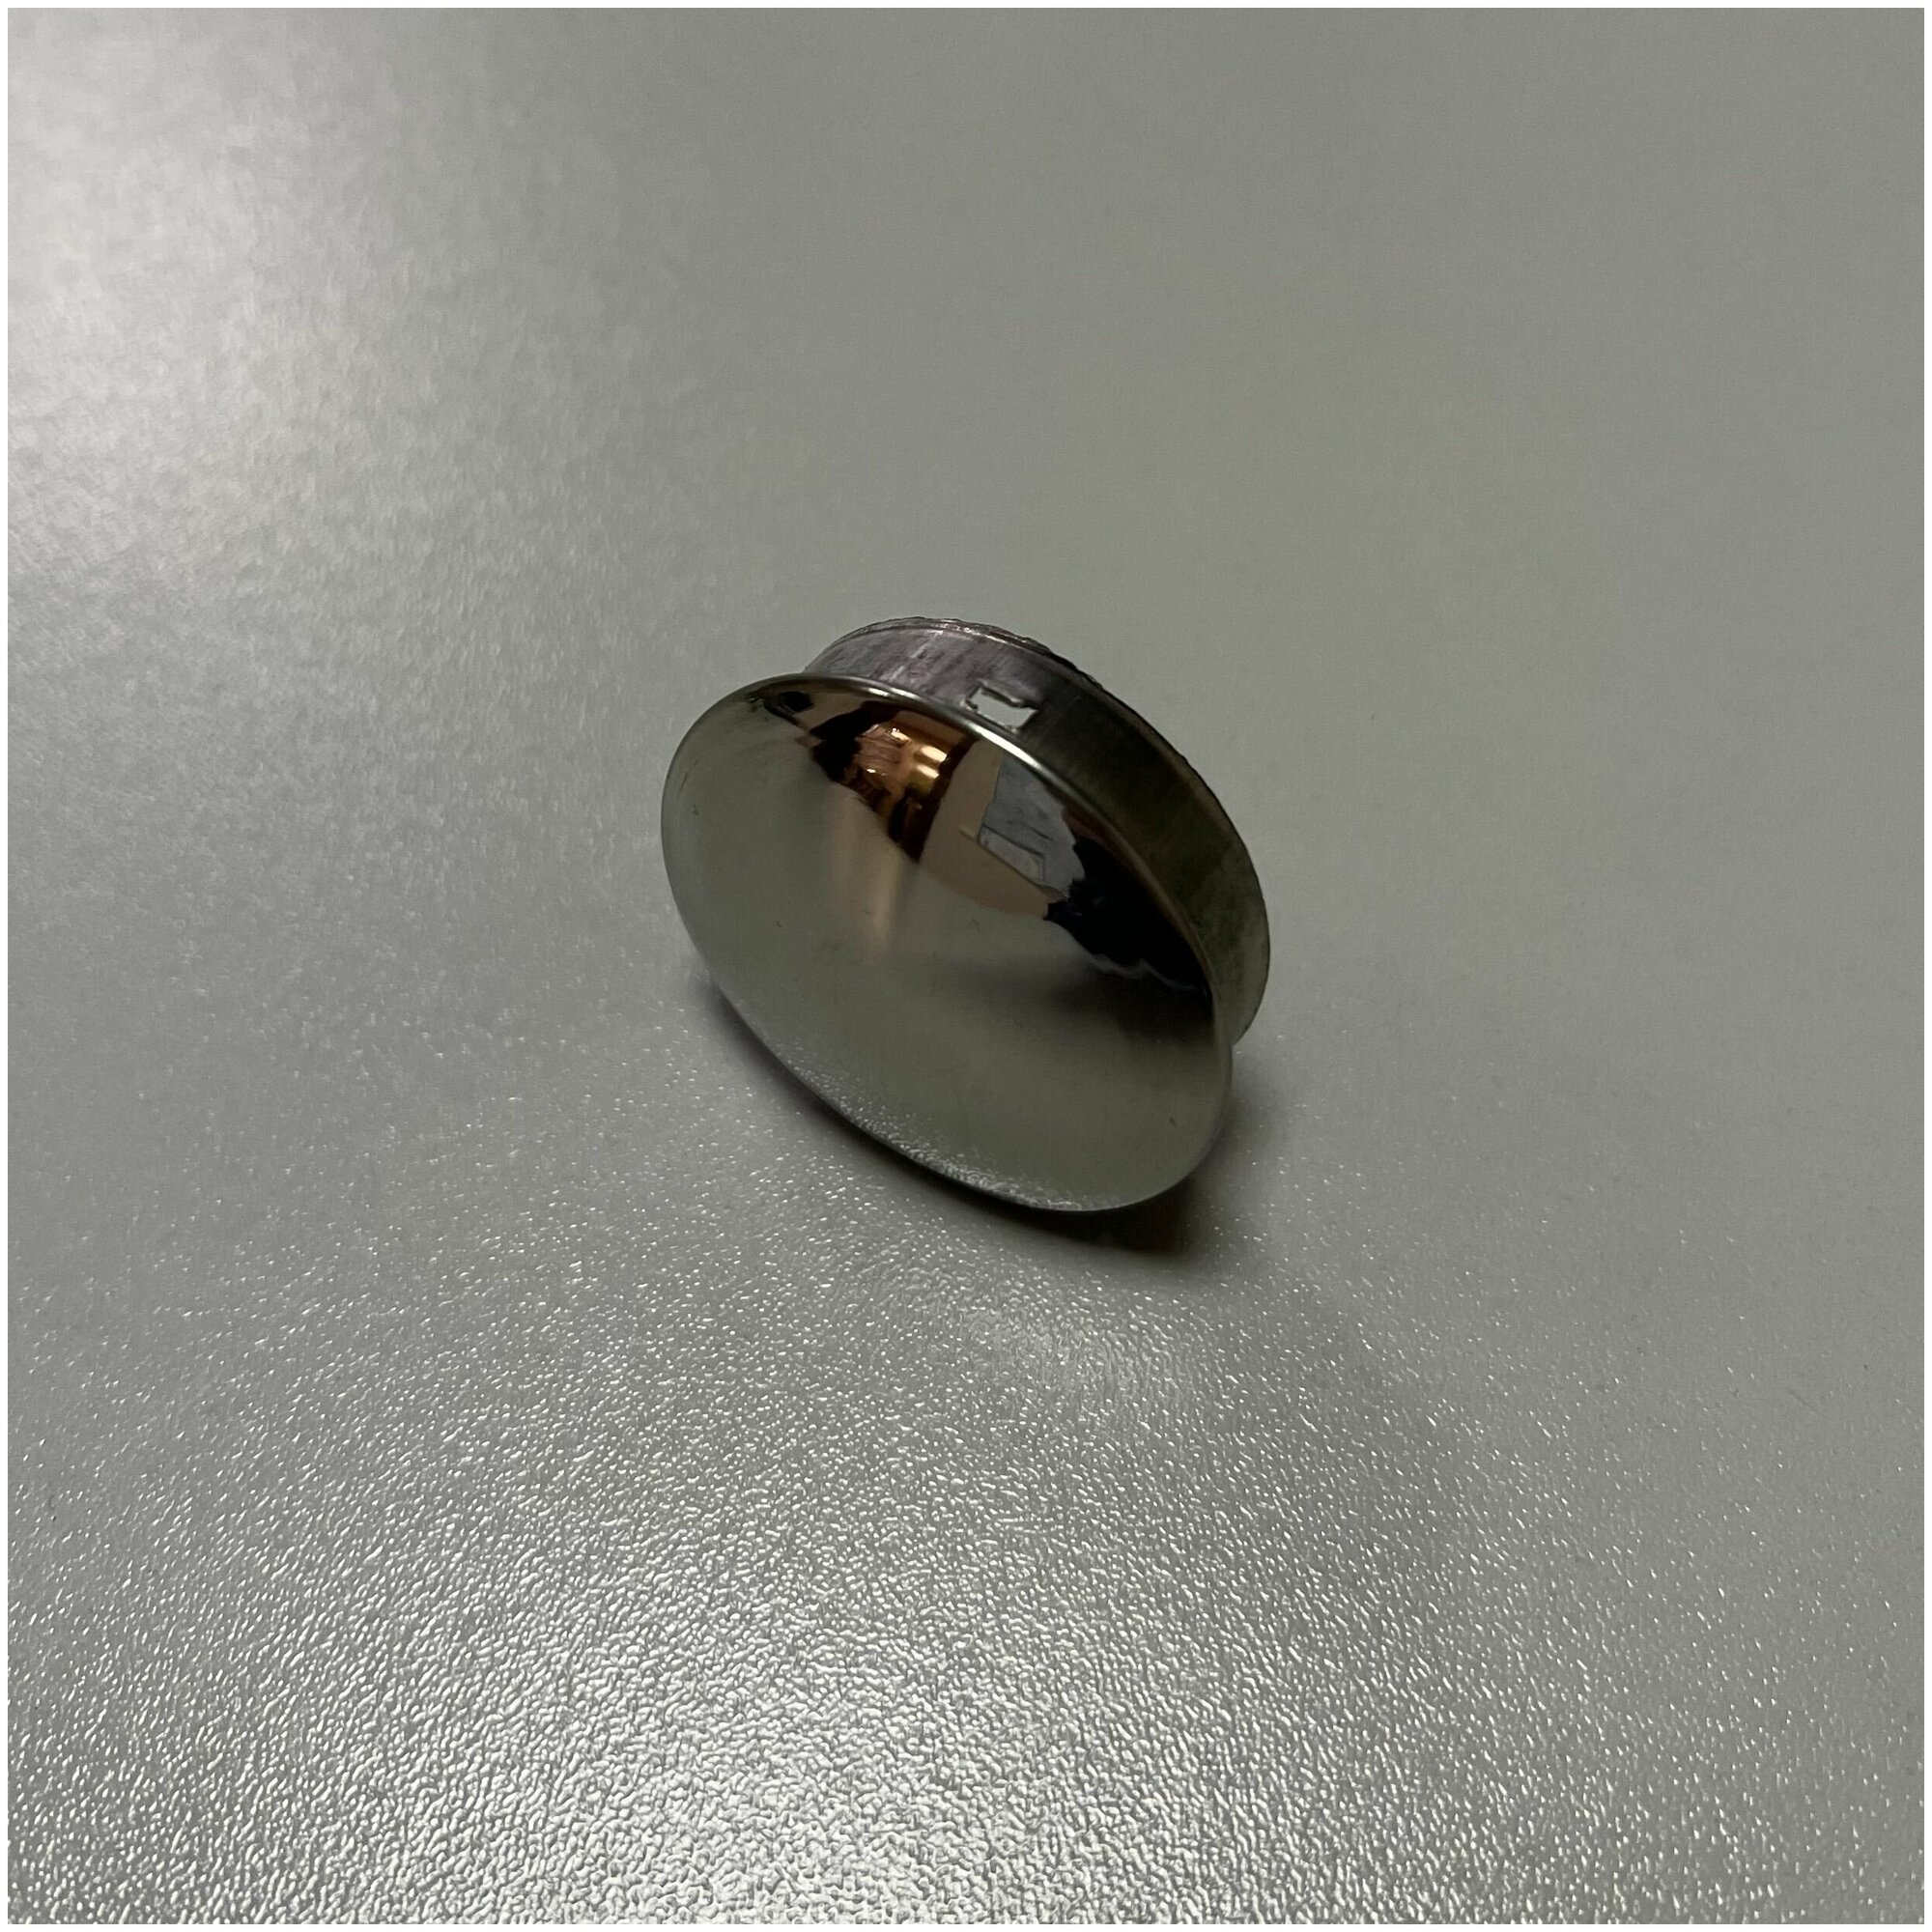 Заглушка внутренняя штампованная натеко для ригеля/трубы/поручня из нержавеющей стали AISI 304, 50.8 мм (Комплектующие для ограждений) (4 шт.)